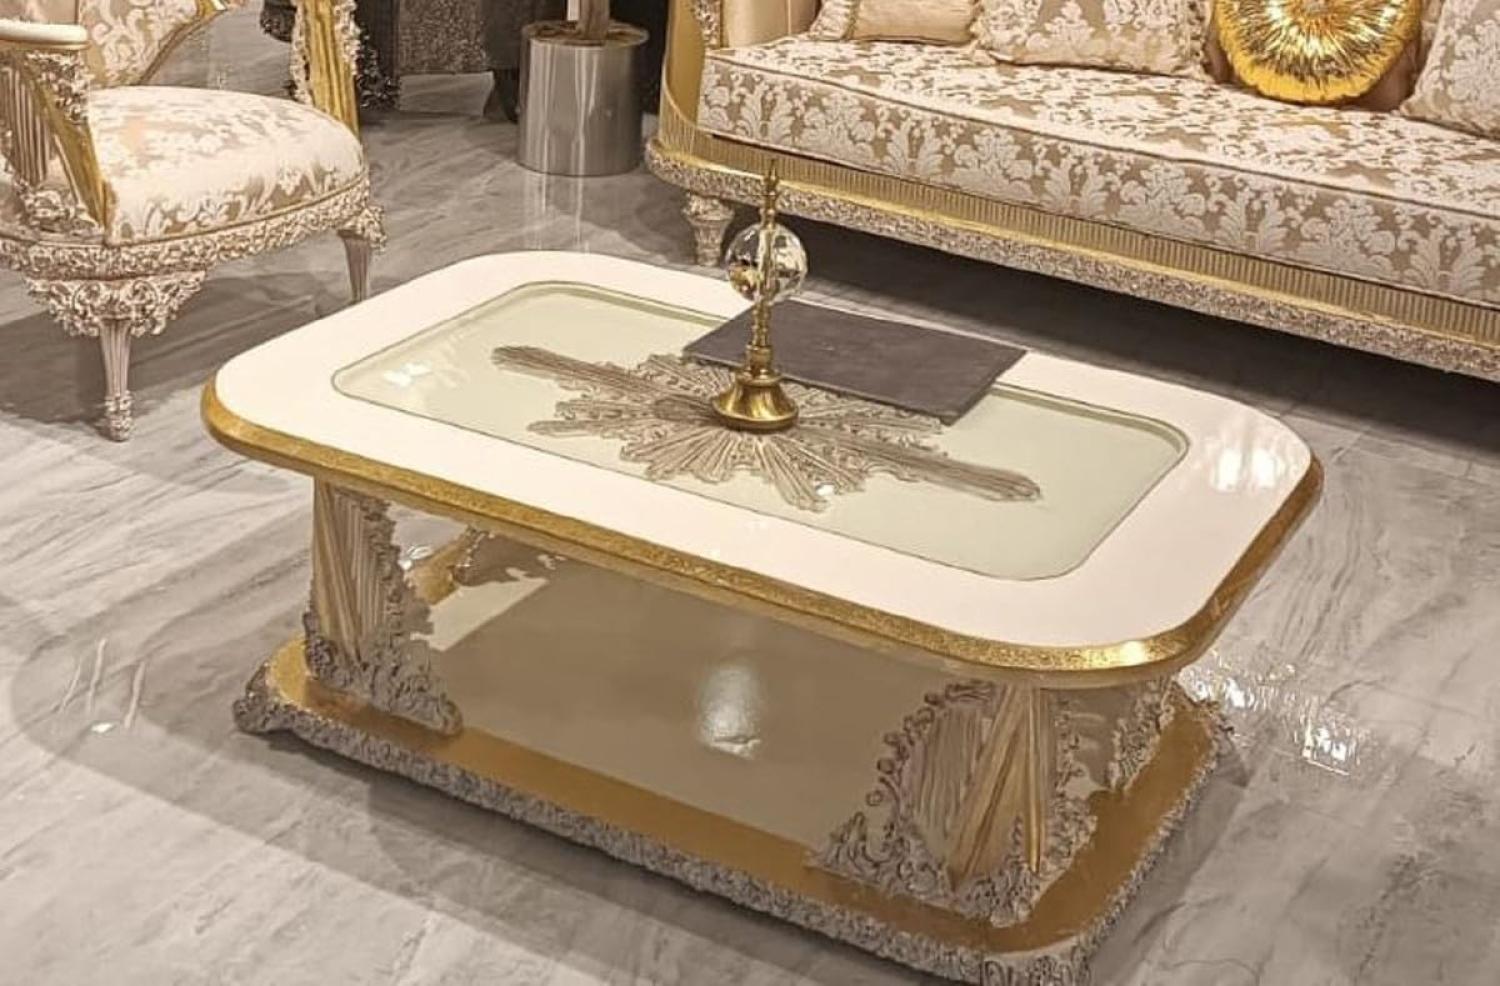 Casa Padrino Luxus Barock Couchtisch Weiß / Gold - Handgefertigter Massivholz Wohnzimmertisch im Barockstil - Prunkvolle Barock Wohnzimmer Möbel Bild 1